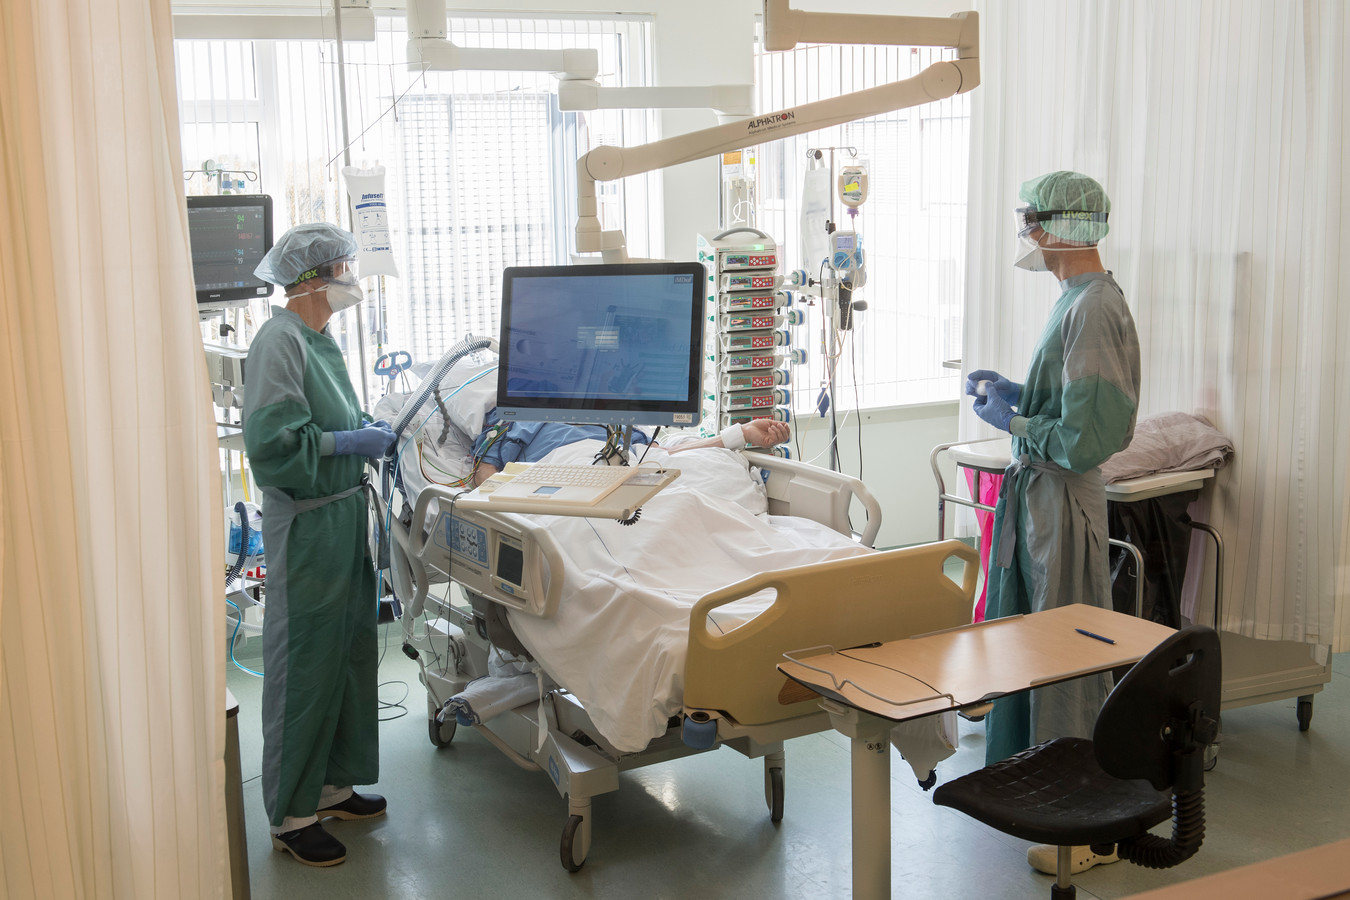 Verpleegkundigen in het ziekenhuis in Ede bezig met verzorging en checken van een coronapatiënt. Gevreesd wordt dat door de oplopende besmettingen ook veel zorgpersoneel zal uitvallen.